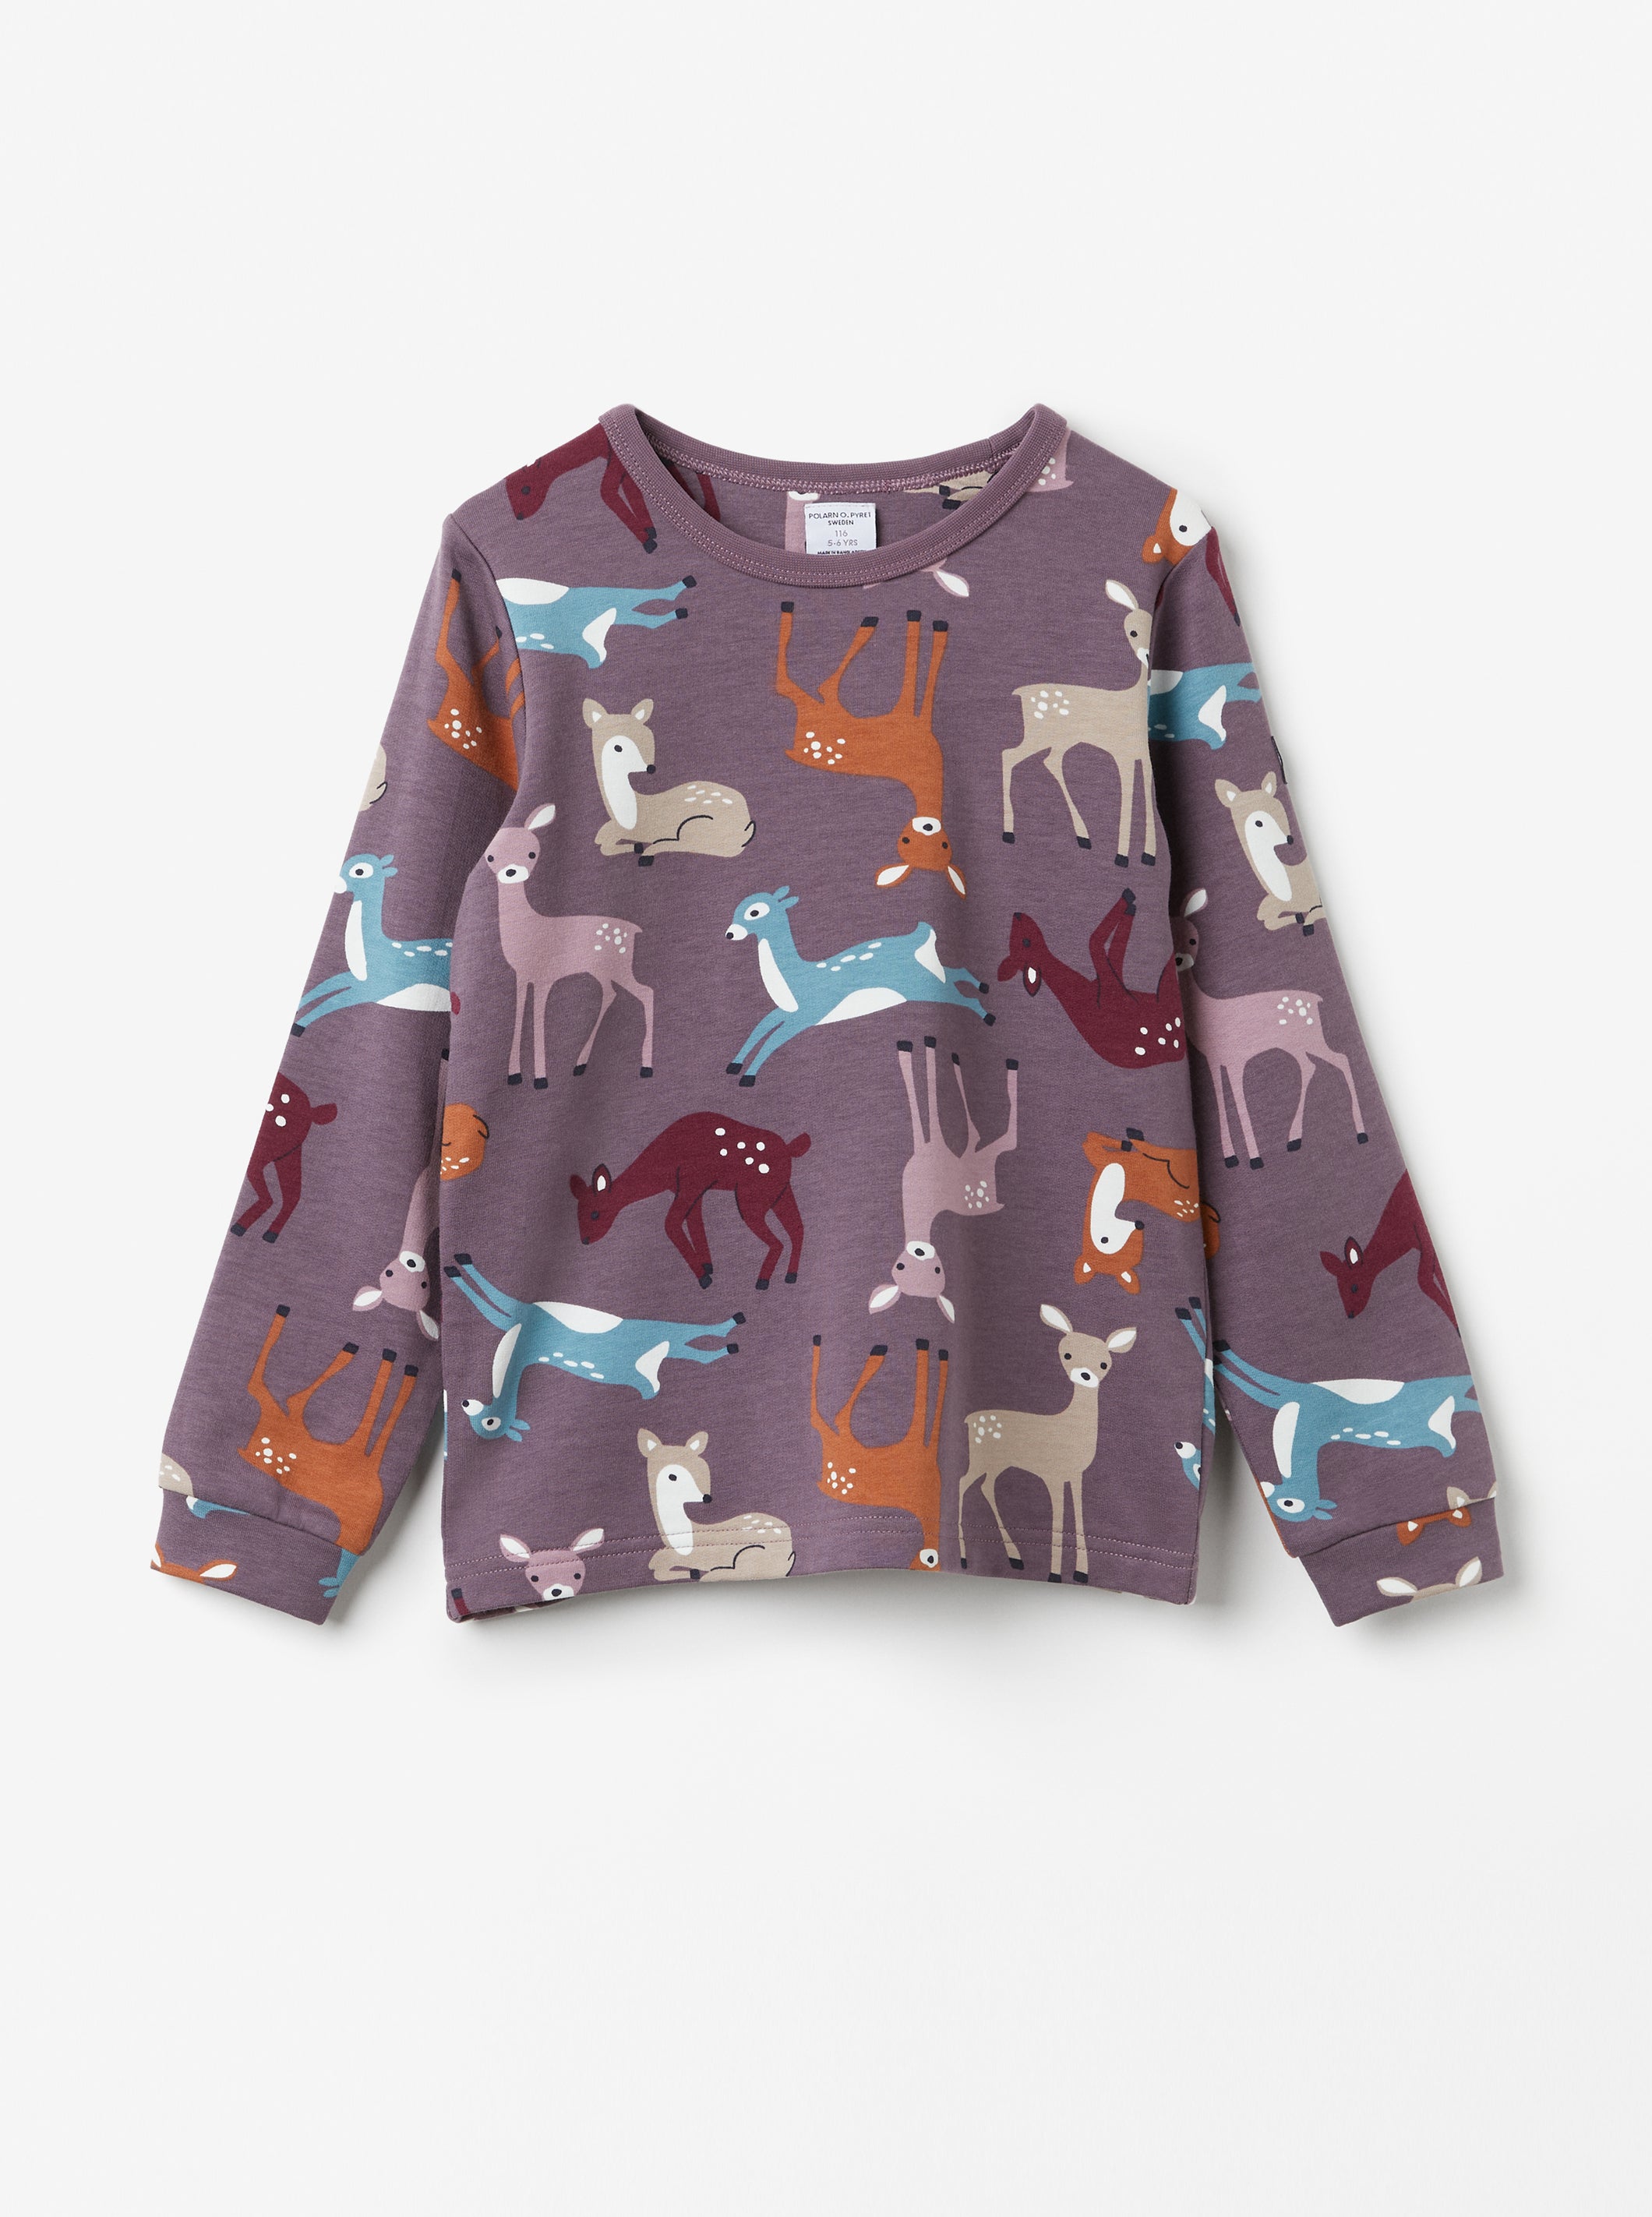 Deer Print Kids Top